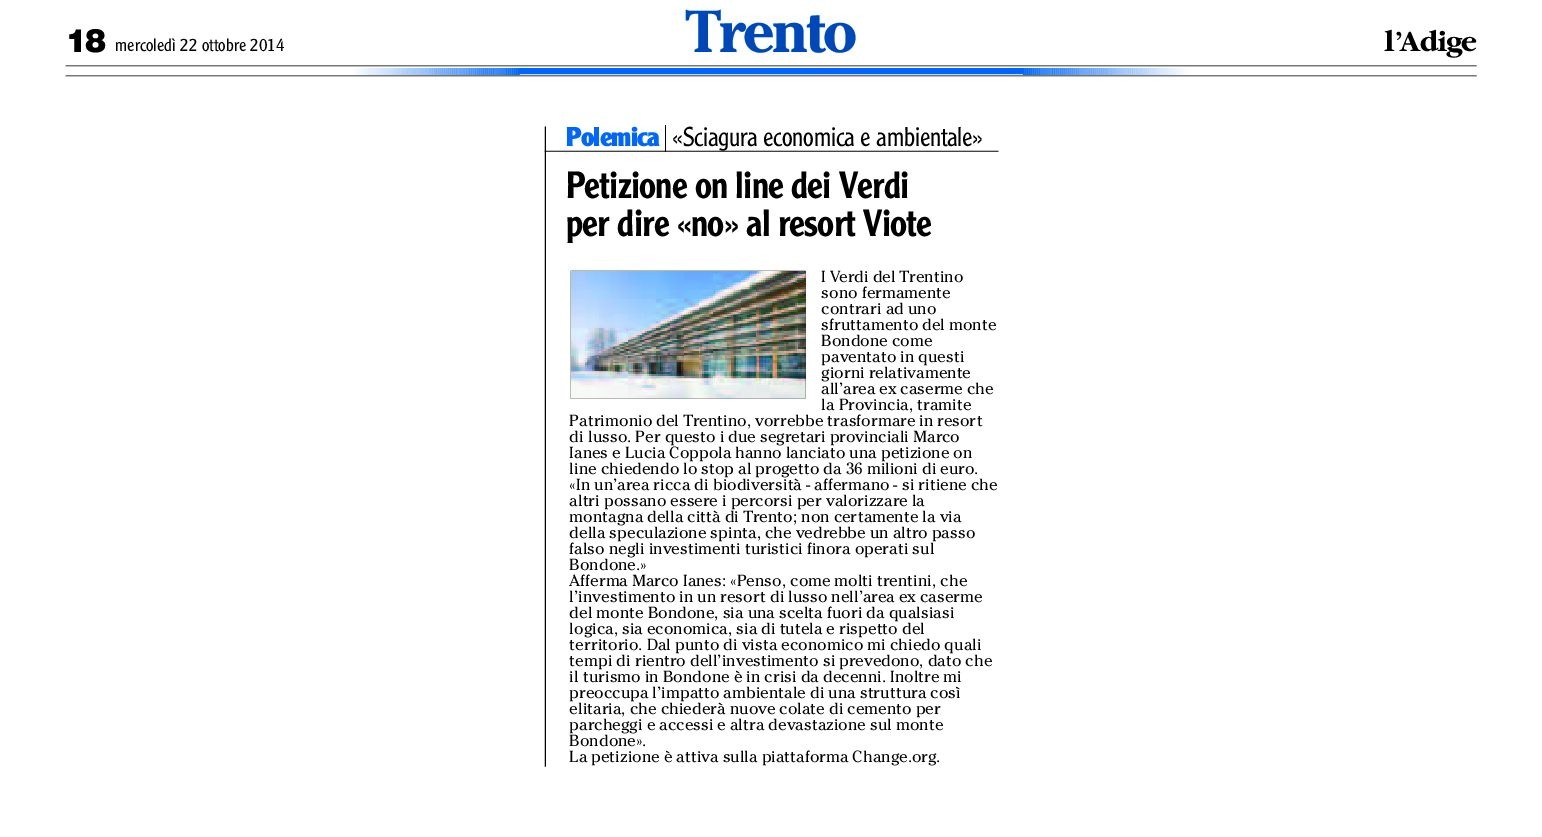 Bondone, Viote: petizione on line dei verdi per dire “no” al resort Viote